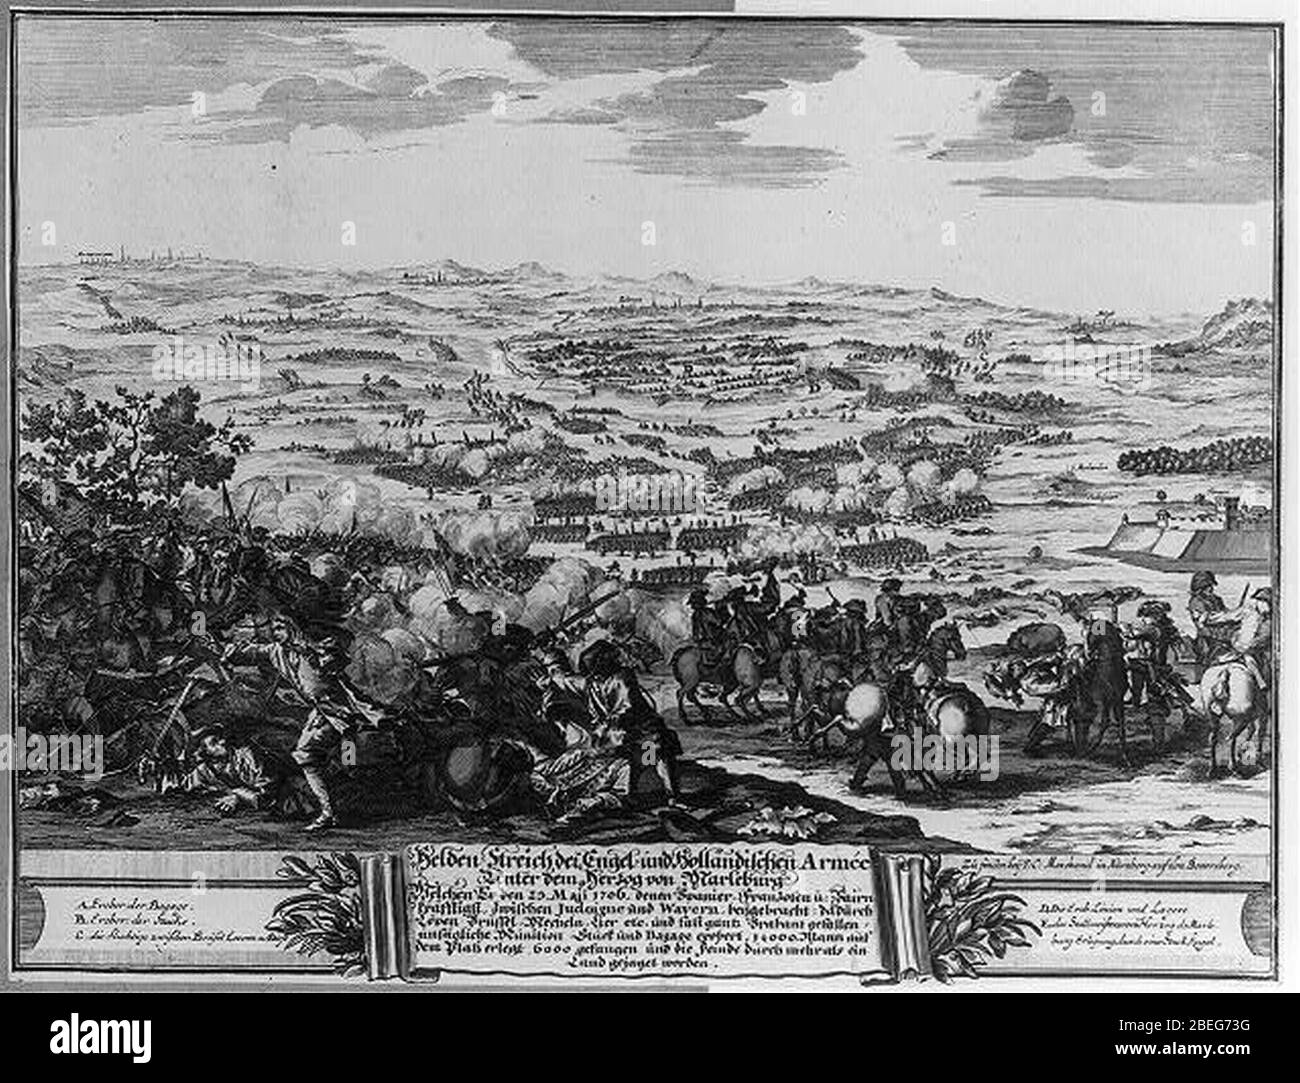 Helden-Streich der Engel- und Holländischen Armee unter dem Herzog von Marleburg welchen er den 23 Maji 1706 denen Spanier Franzosen u. Bairn kräfftigst zwischen Judoigne und Wavern Foto Stock